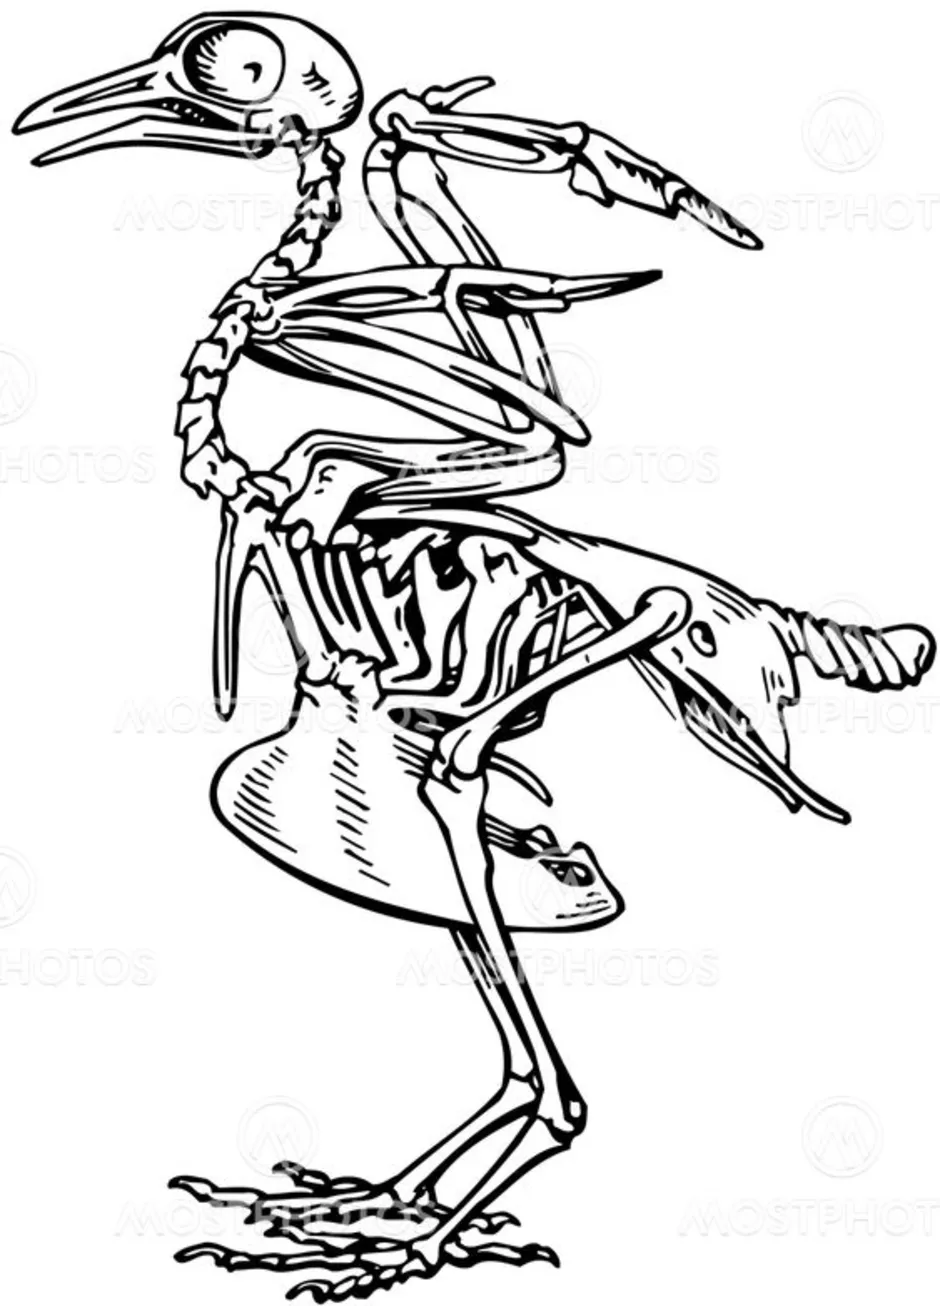 Исследование особенностей скелета птицы лабораторная работа 8. Скелет голубя. Скелет птицы без подписей. Скелет сизого голубя. Скелет птицы голубя.